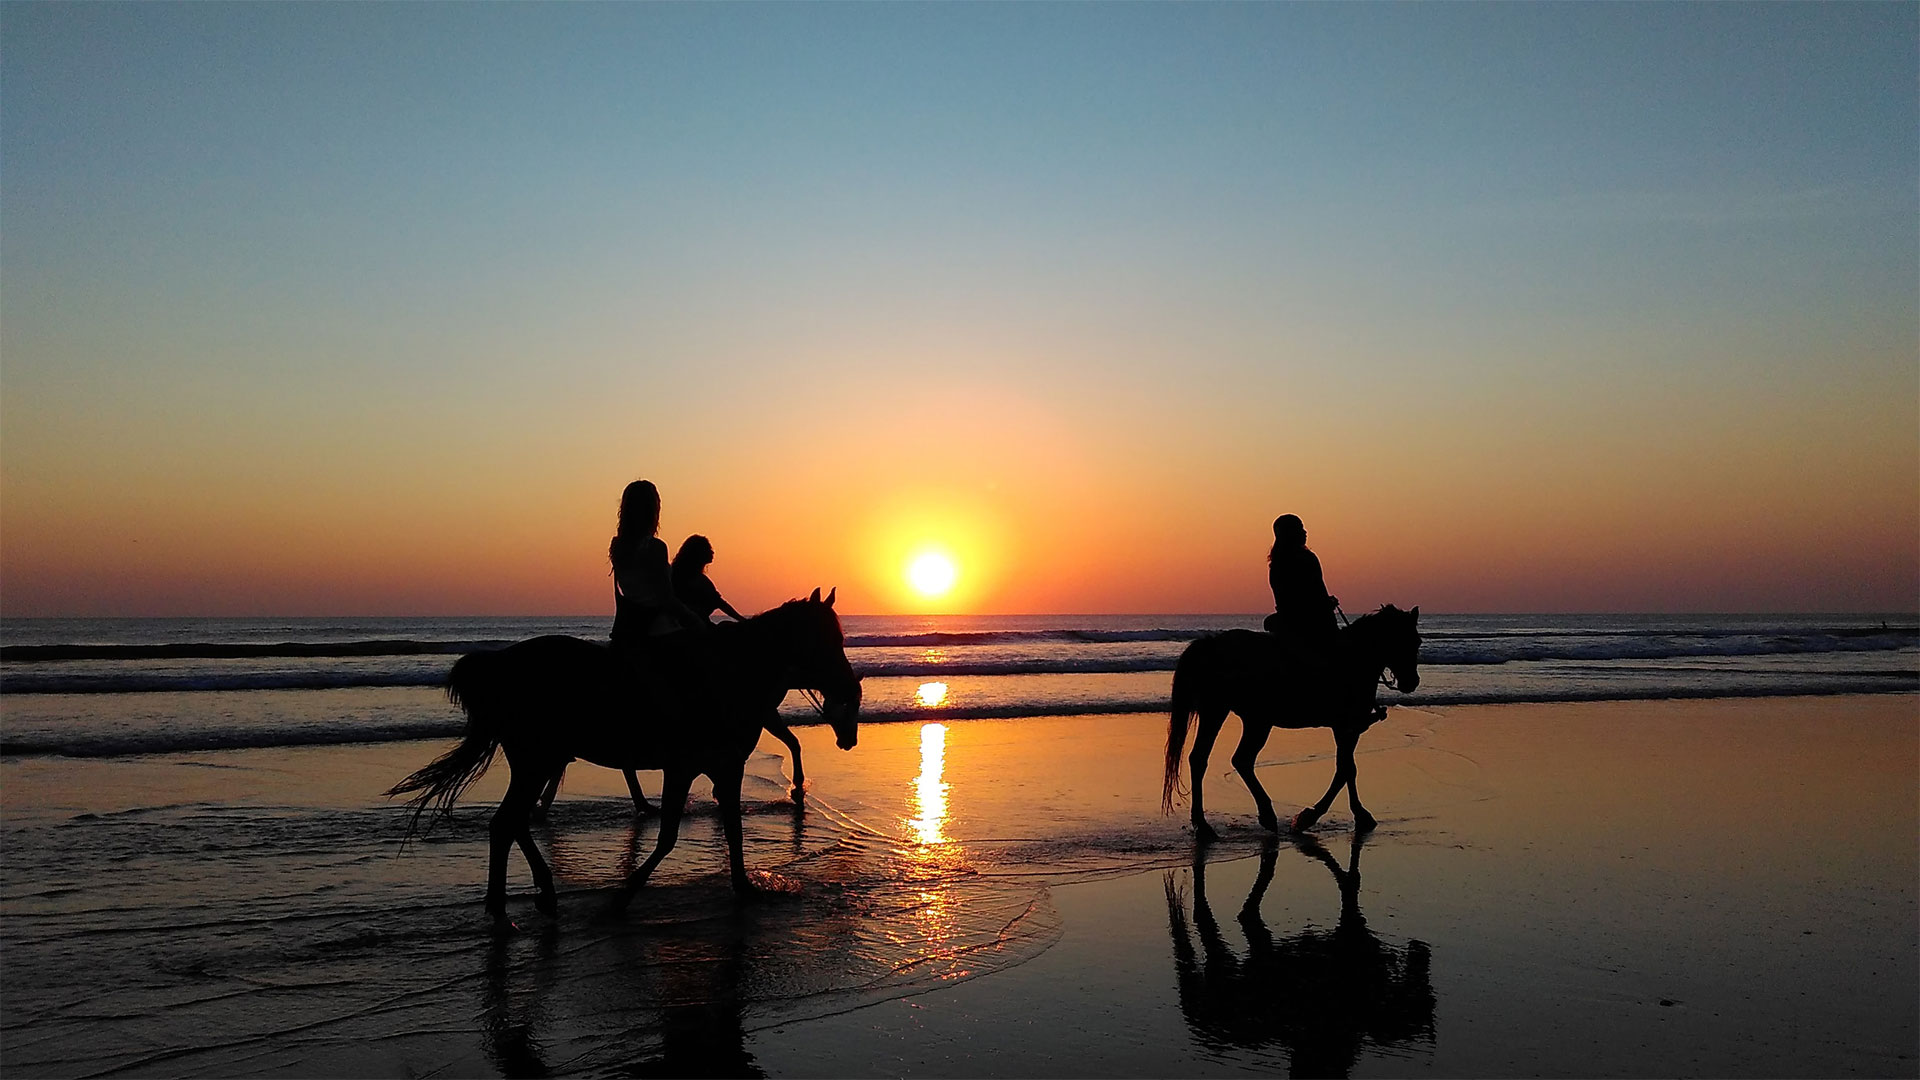 A cavallo sulla spiaggia al tramonto - Costa degli Etruschi